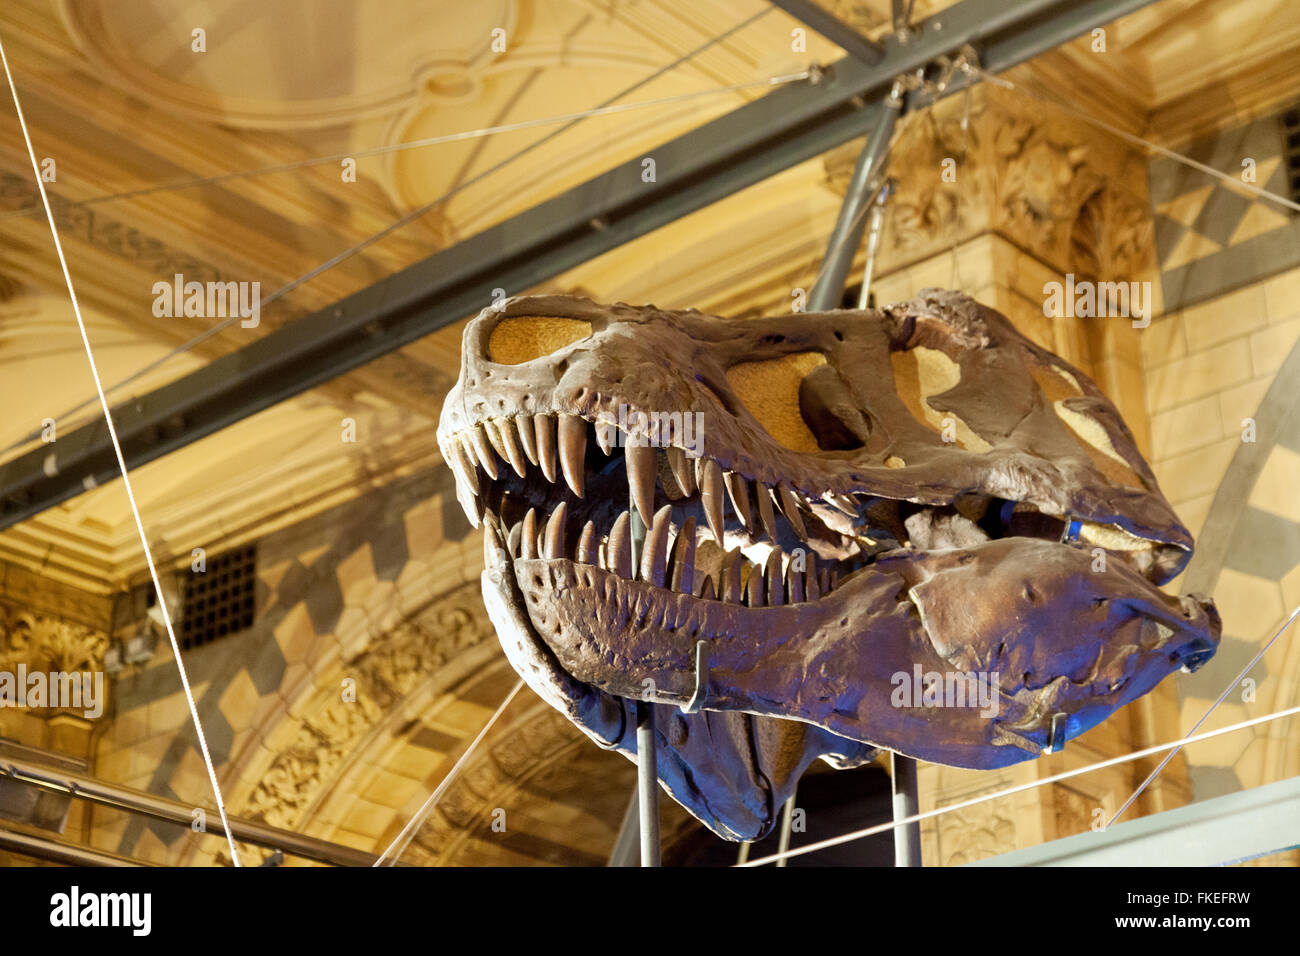 Le crâne fossilisé d'un T Rex ( Tyrannosaurus Rex ) dinosaure, Natural History Museum, London UK Banque D'Images